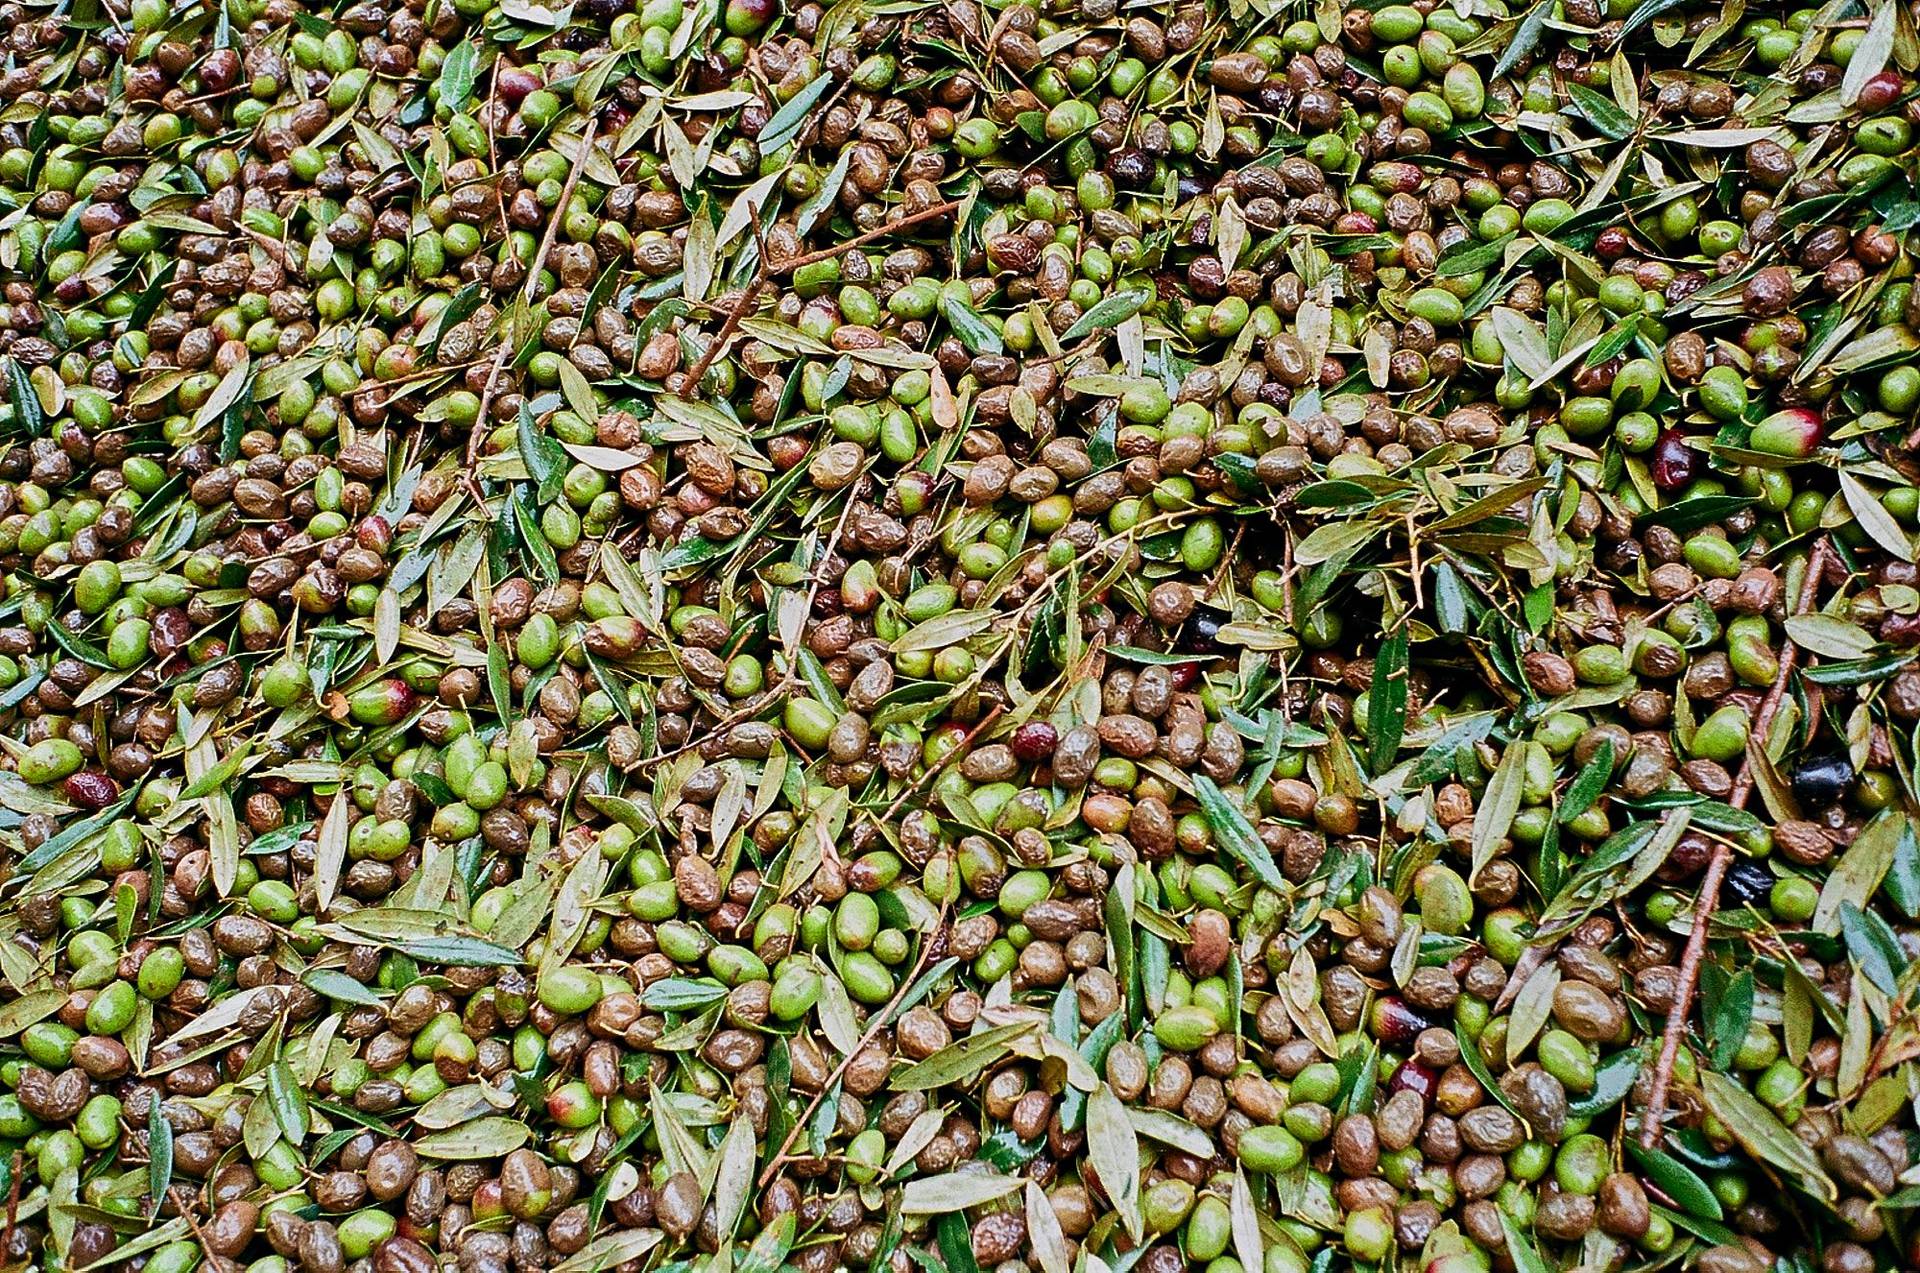 olivenölherstellung in alentejo